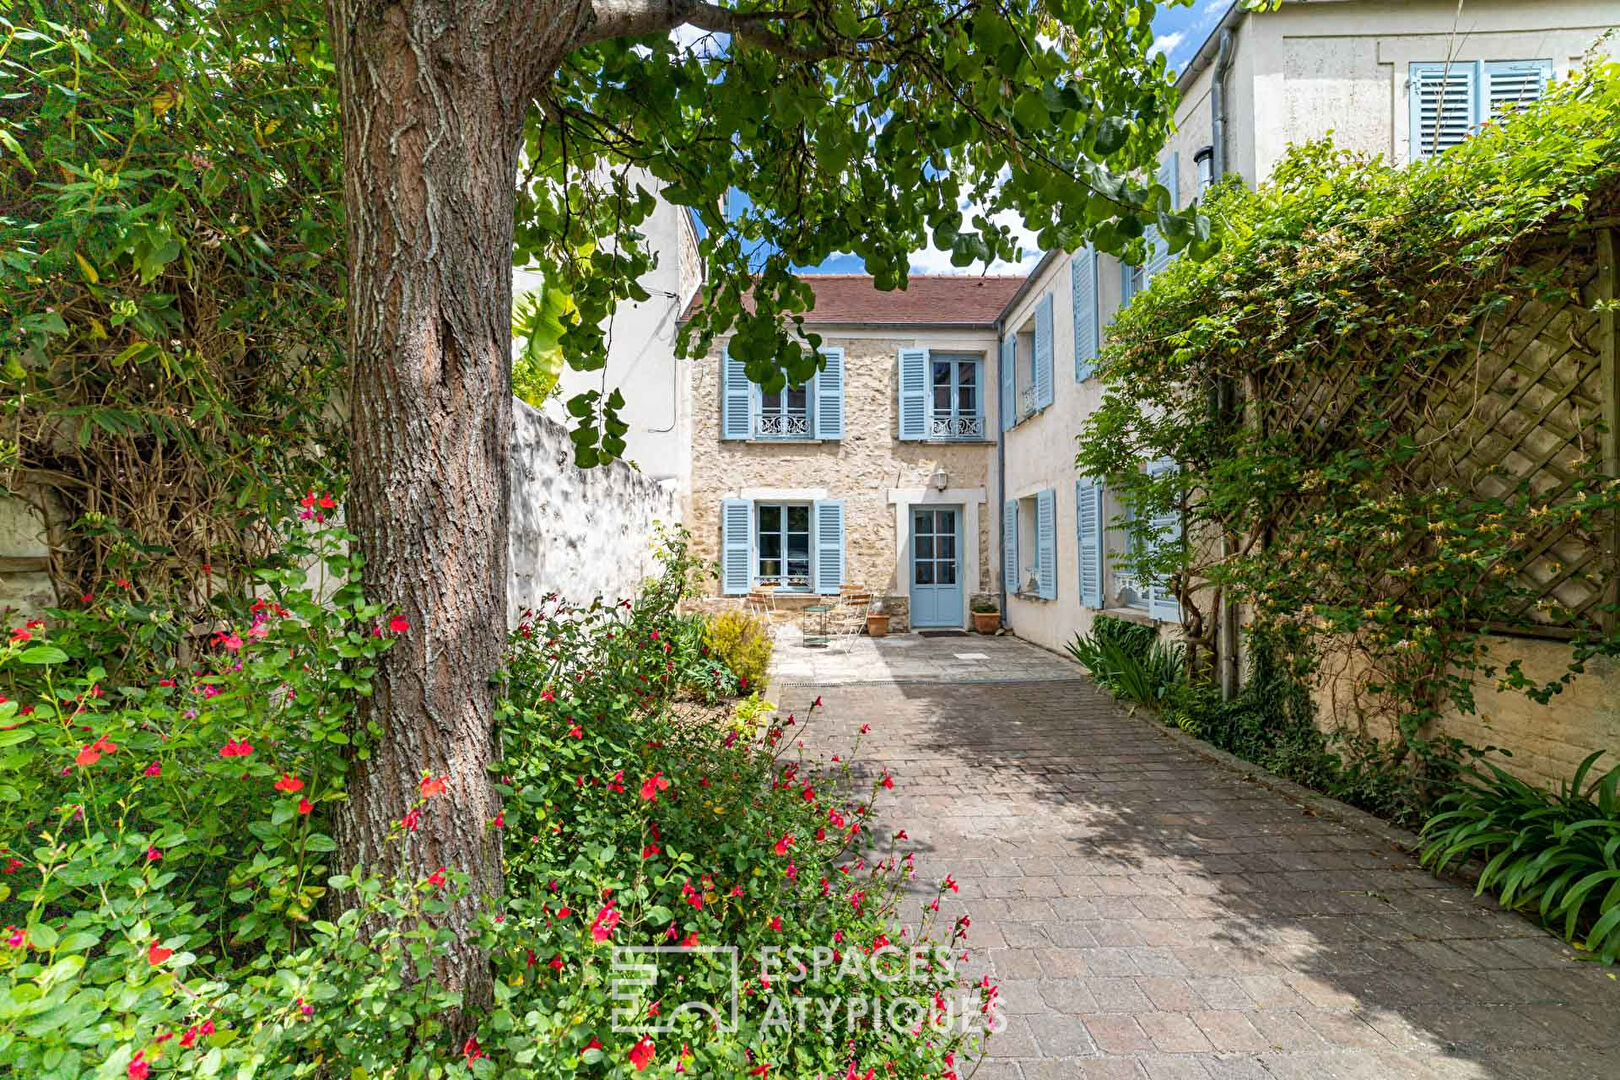 Maison de famille avec jardin au coeur du centre historique de Verneuil sur Seine